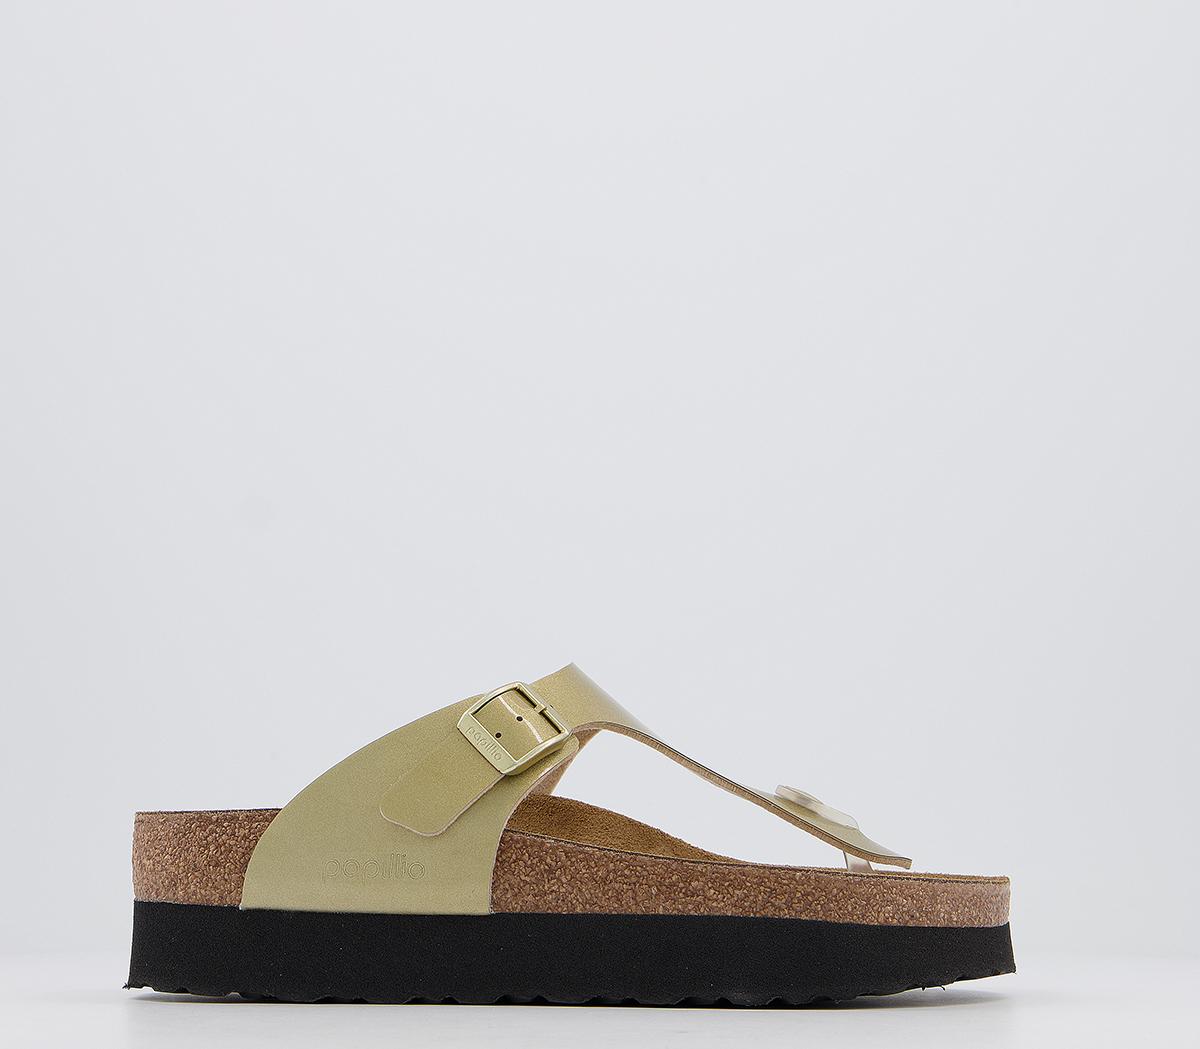 gizeh platform sandal